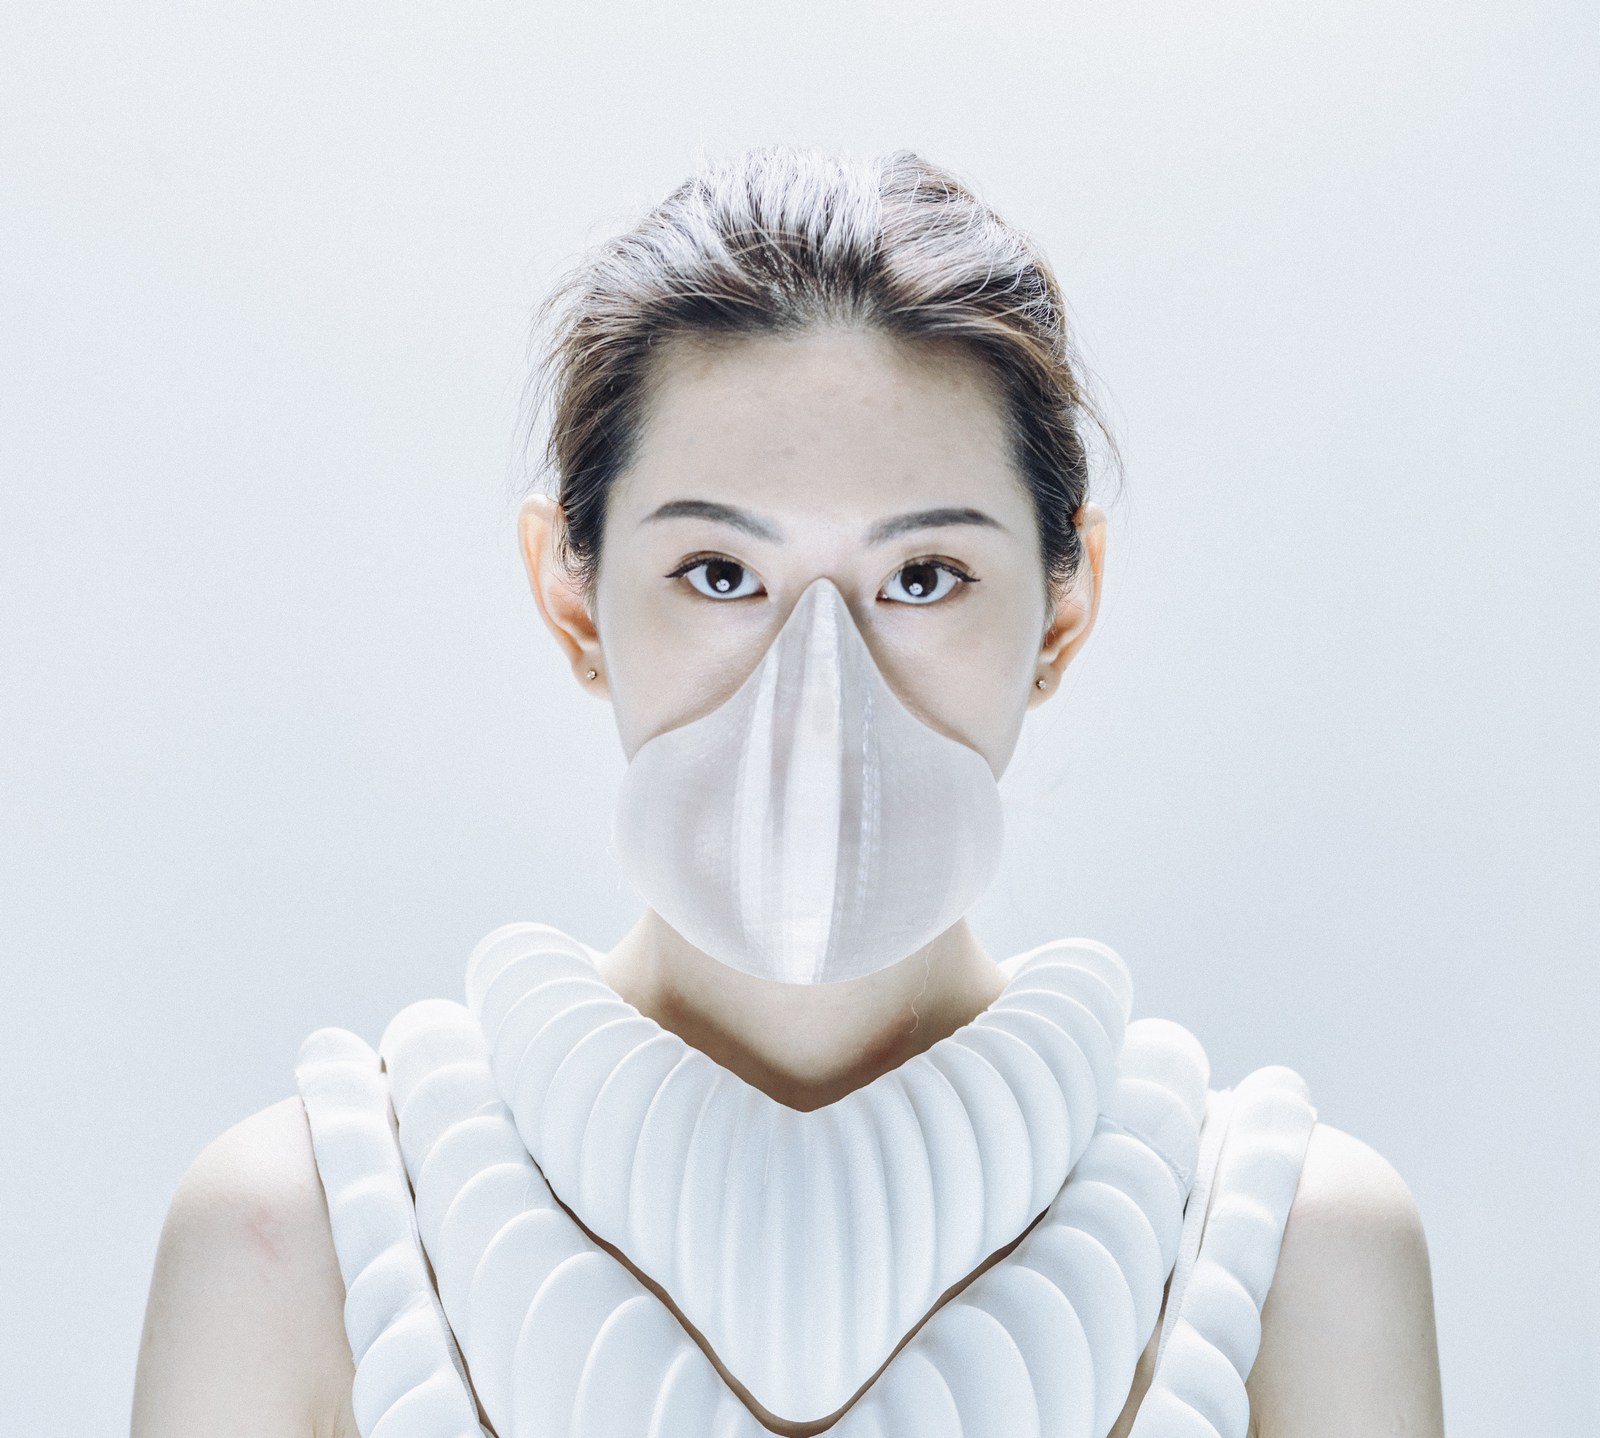 Le masque Amphibio pourrait nous transformer en poisson ! © Mikito Tateisi/Model